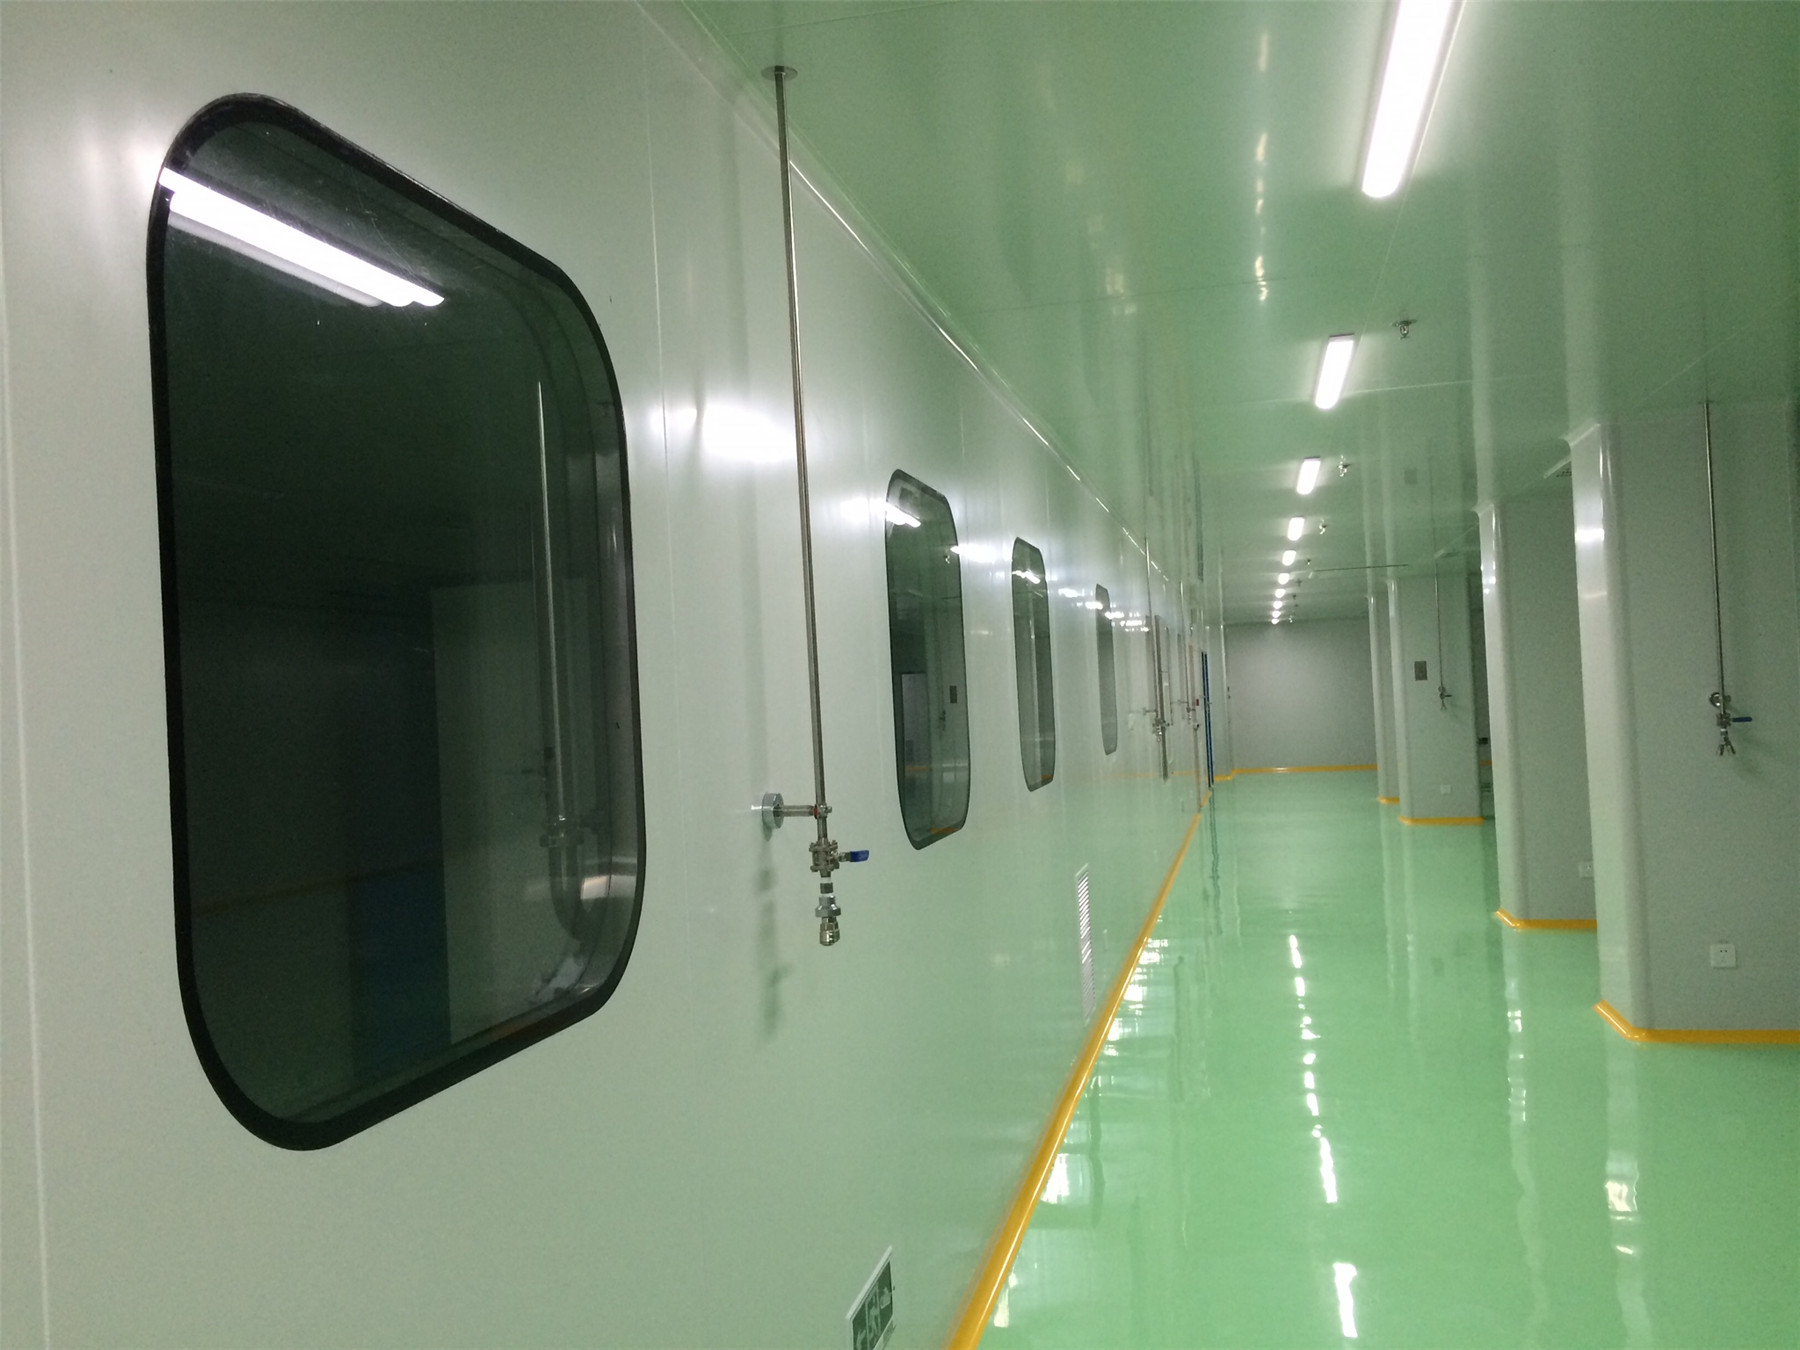 十万级无菌室 上海立净机电设备安装工程供应